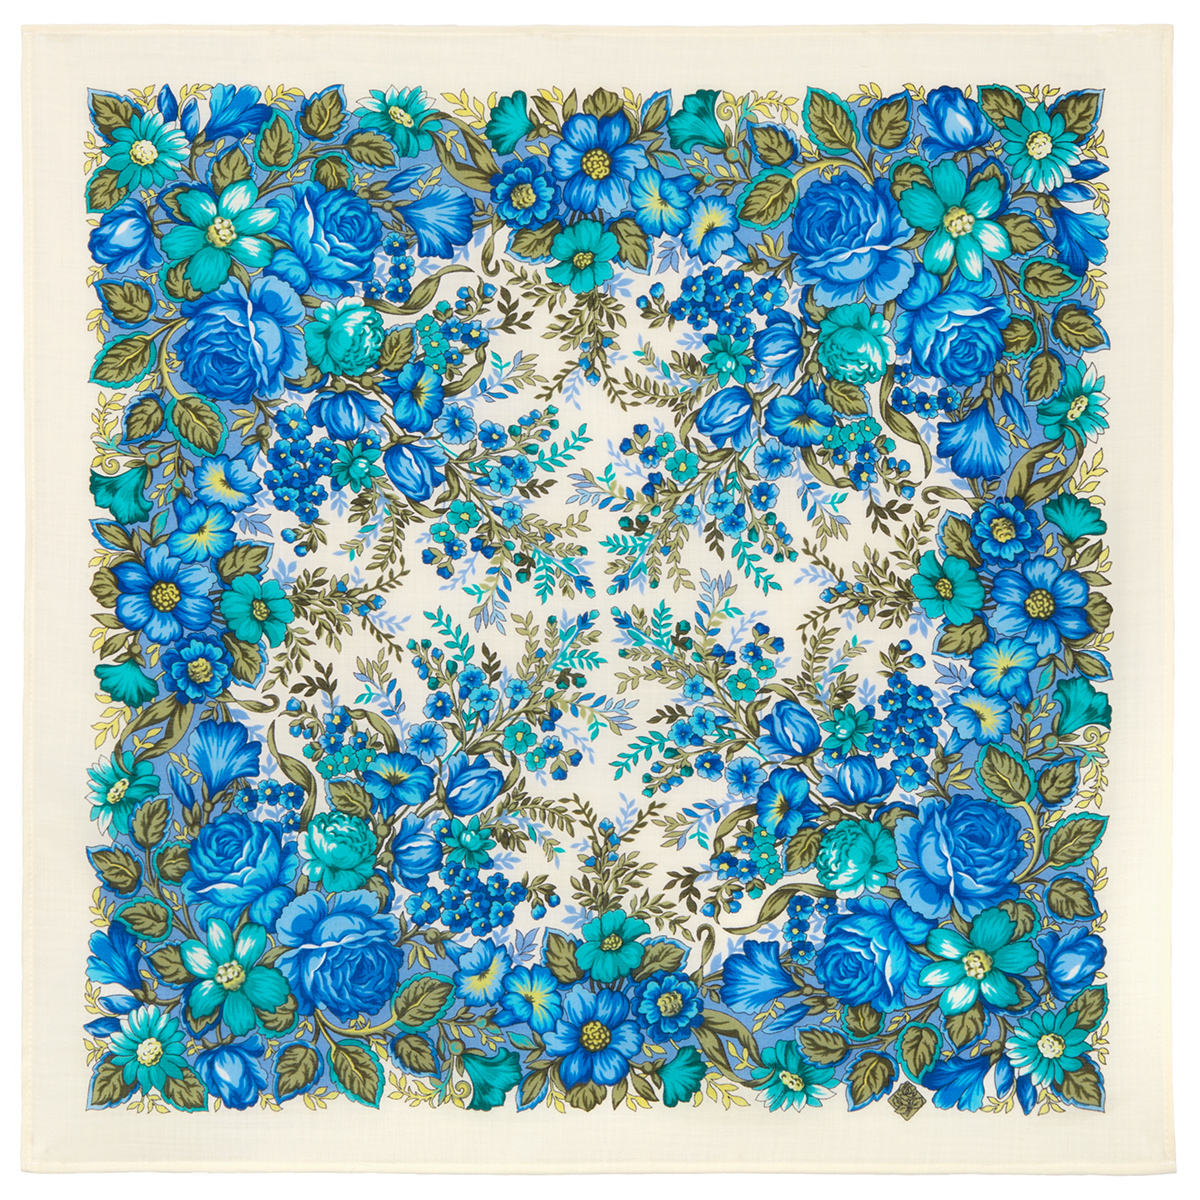 Платок женский Павловопосадская платочная мануфактура 1821 синий/бирюзовый, 72х72 см